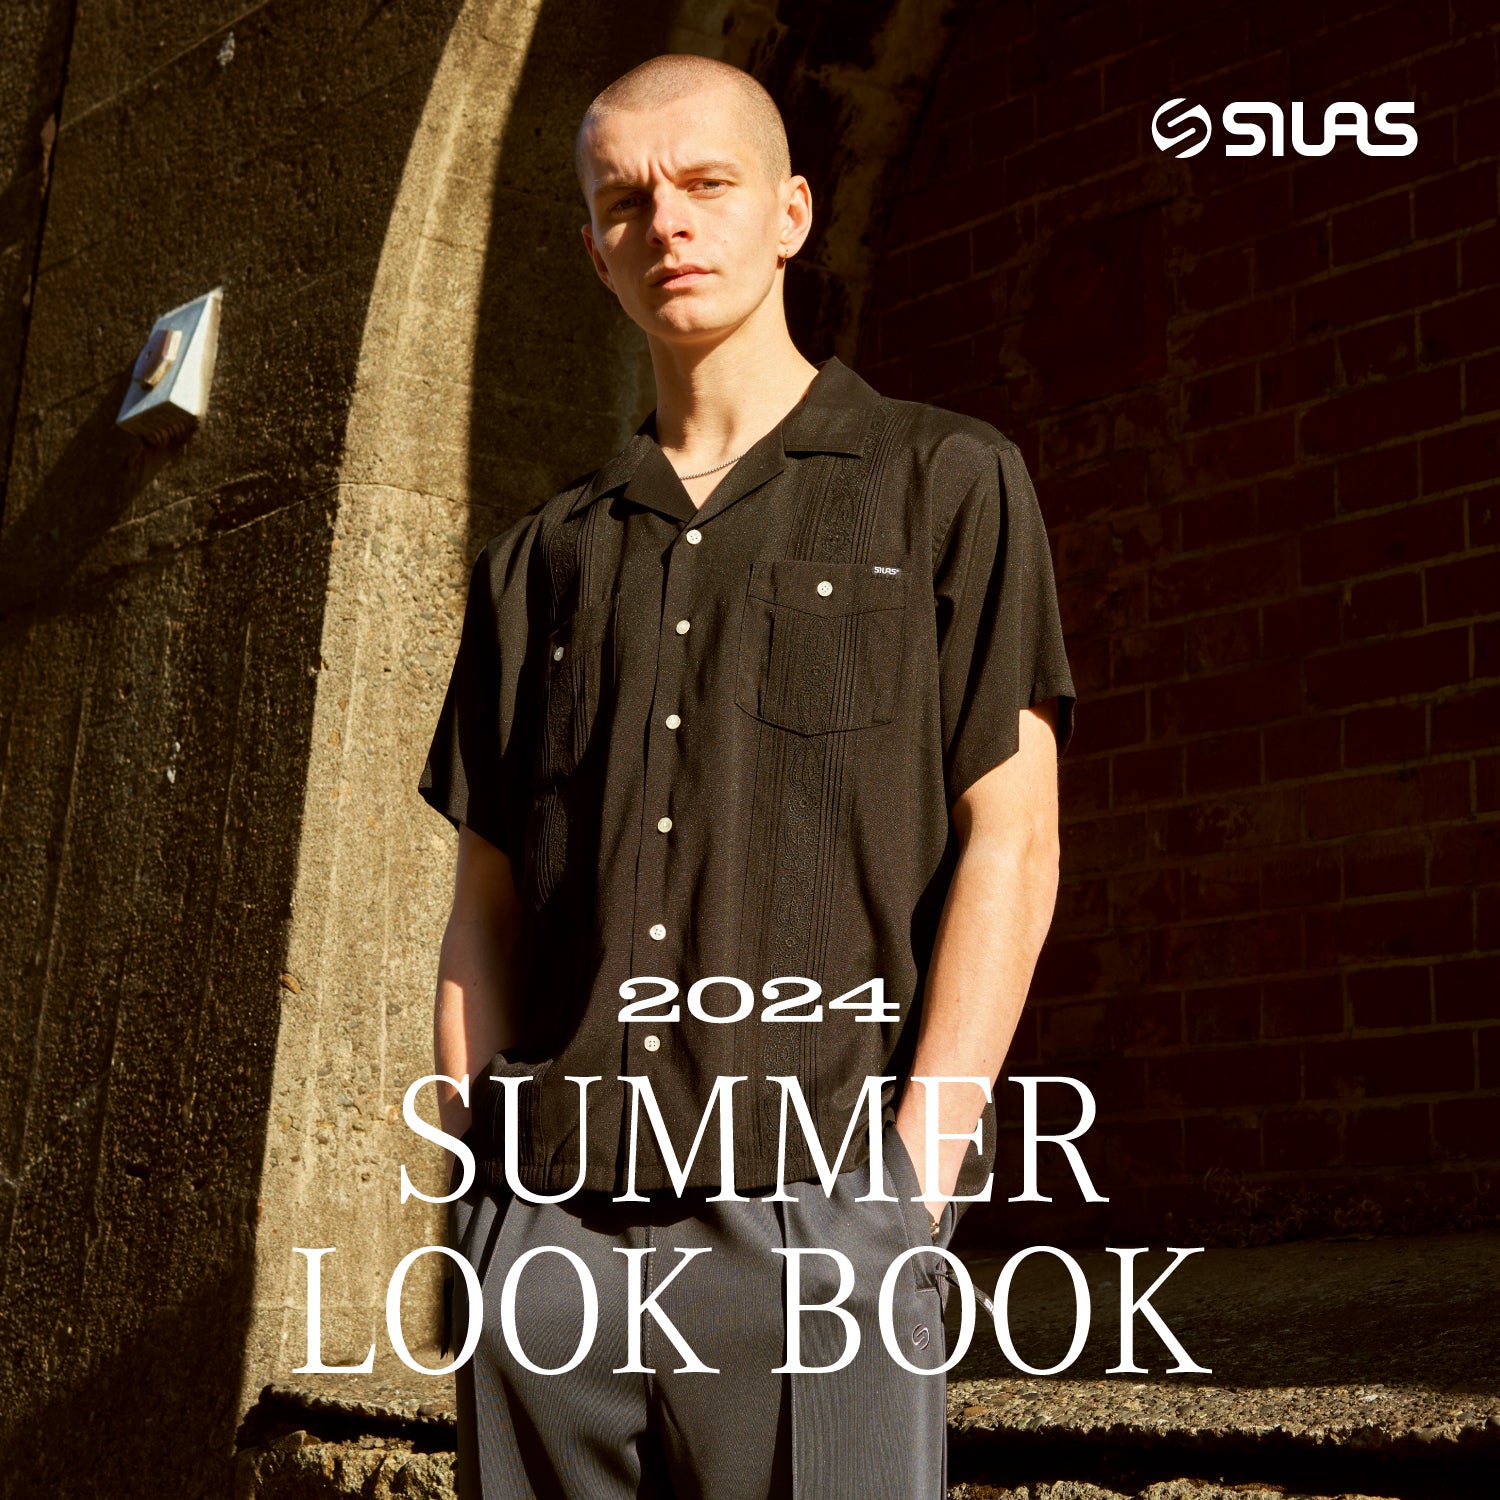 SILAS 2024 SUMMER LOOK BOOK